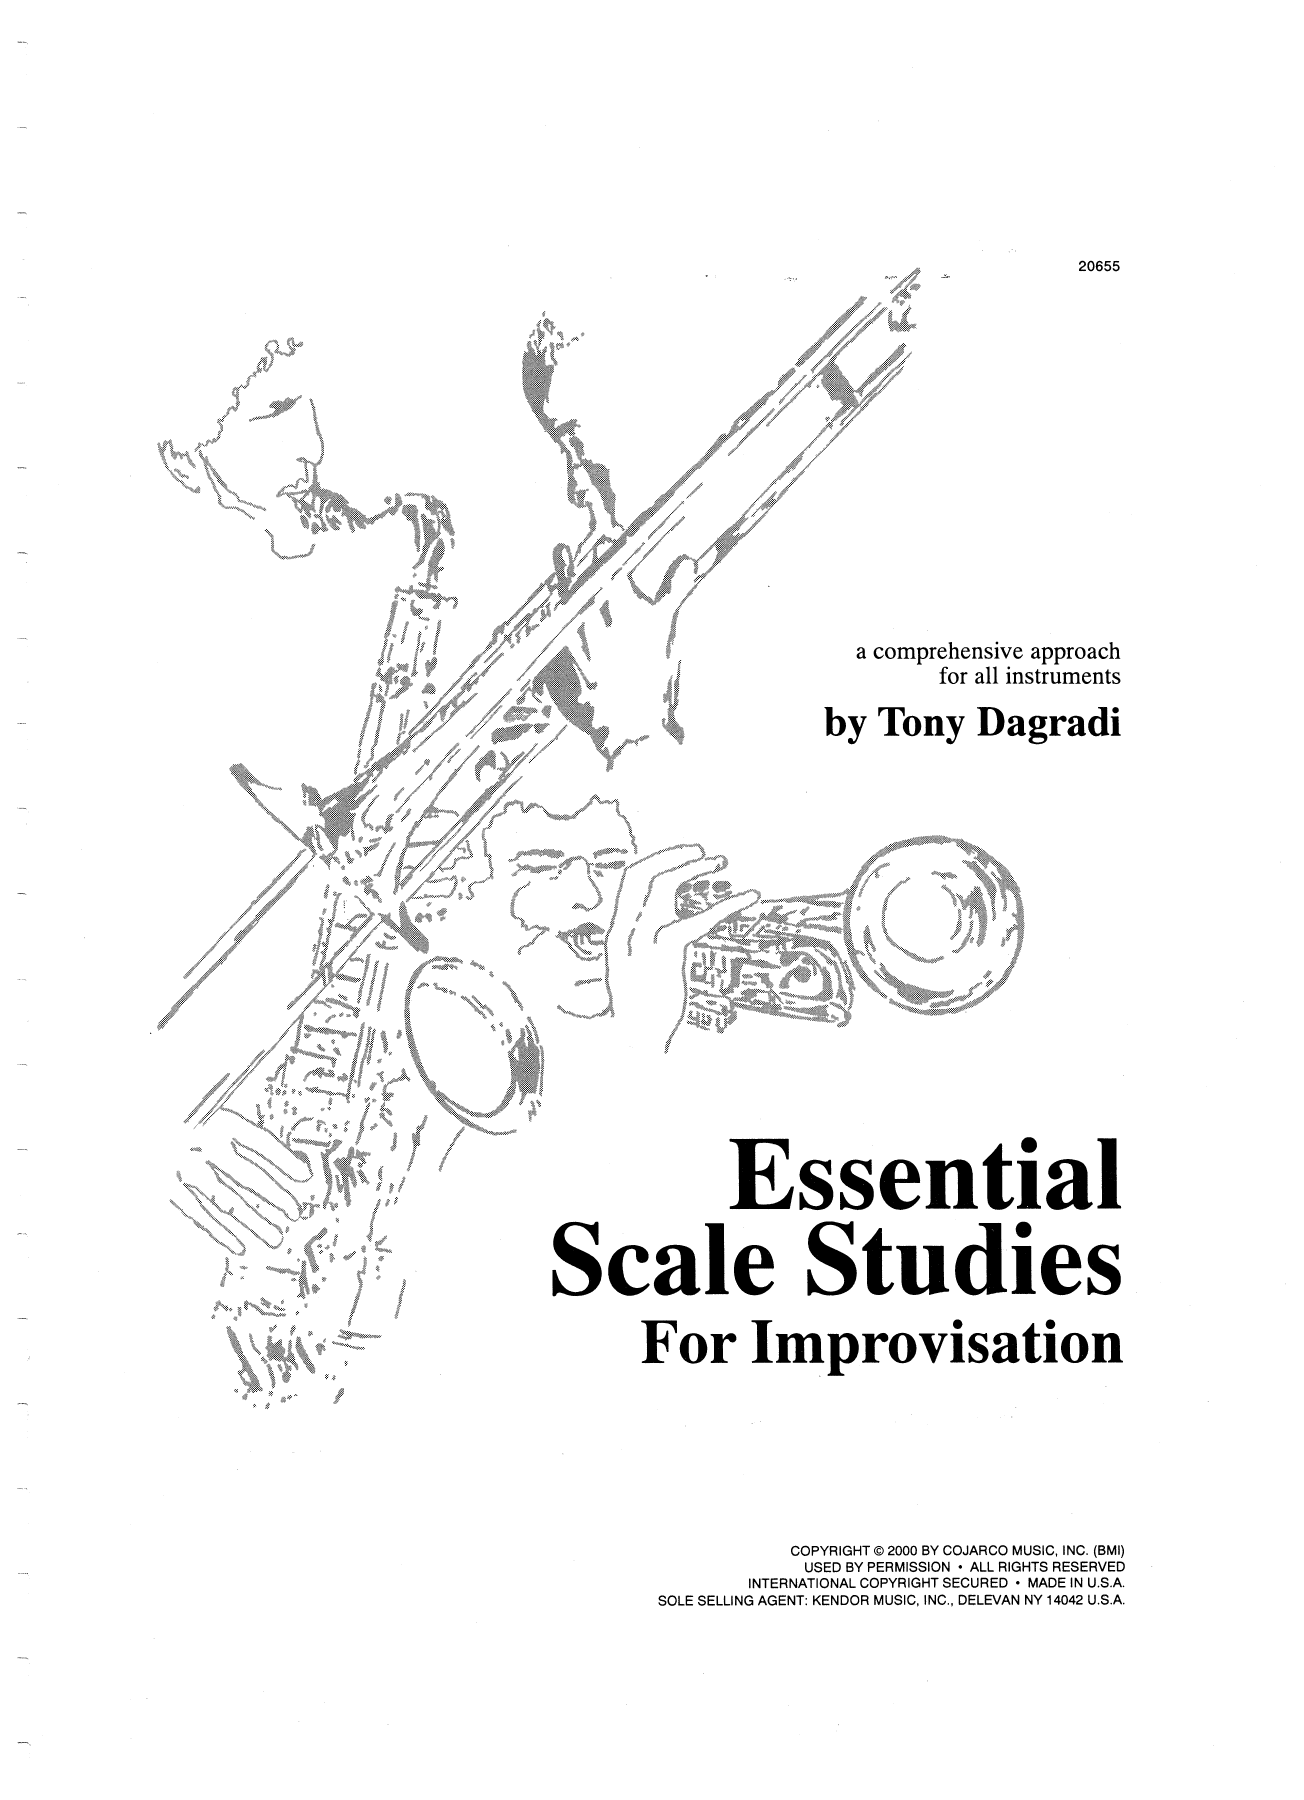 Download Dagradi Essential Scale Studies For Improvisati Sheet Music